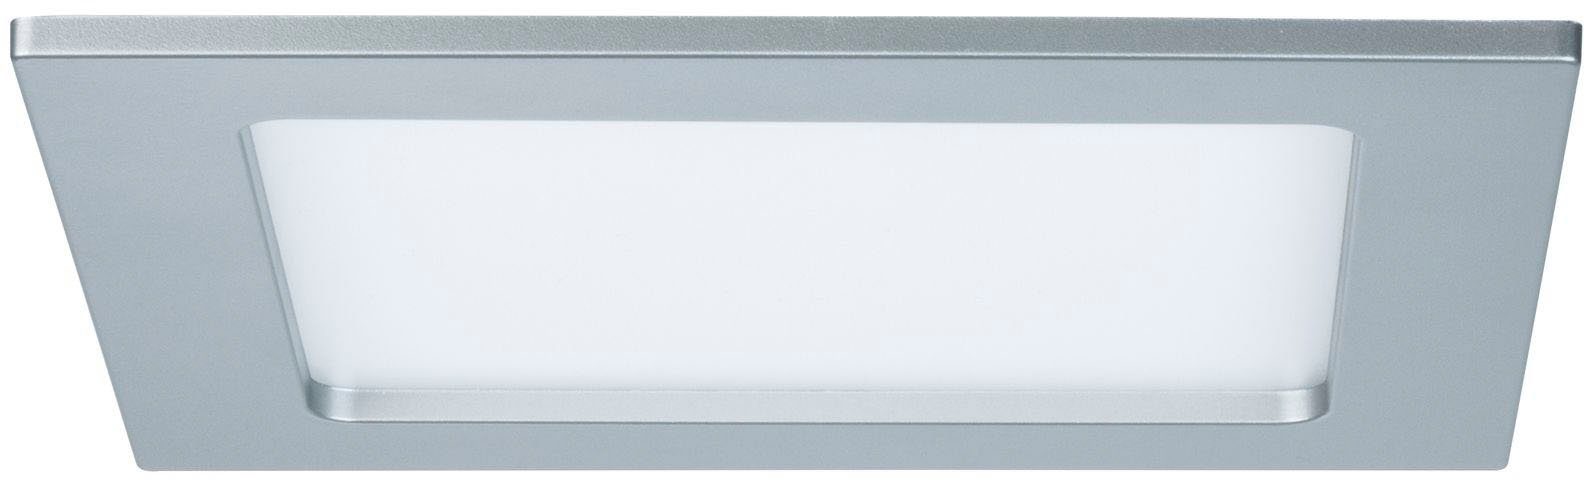 Paulmann LED Panel LED Einbaupanel eckig 165x165mm 12W 2.700K Chrom matt, LED fest integriert, Warmweiß, LED Einbaupanel eckig 165x165mm 12W 2.700K Chrom matt